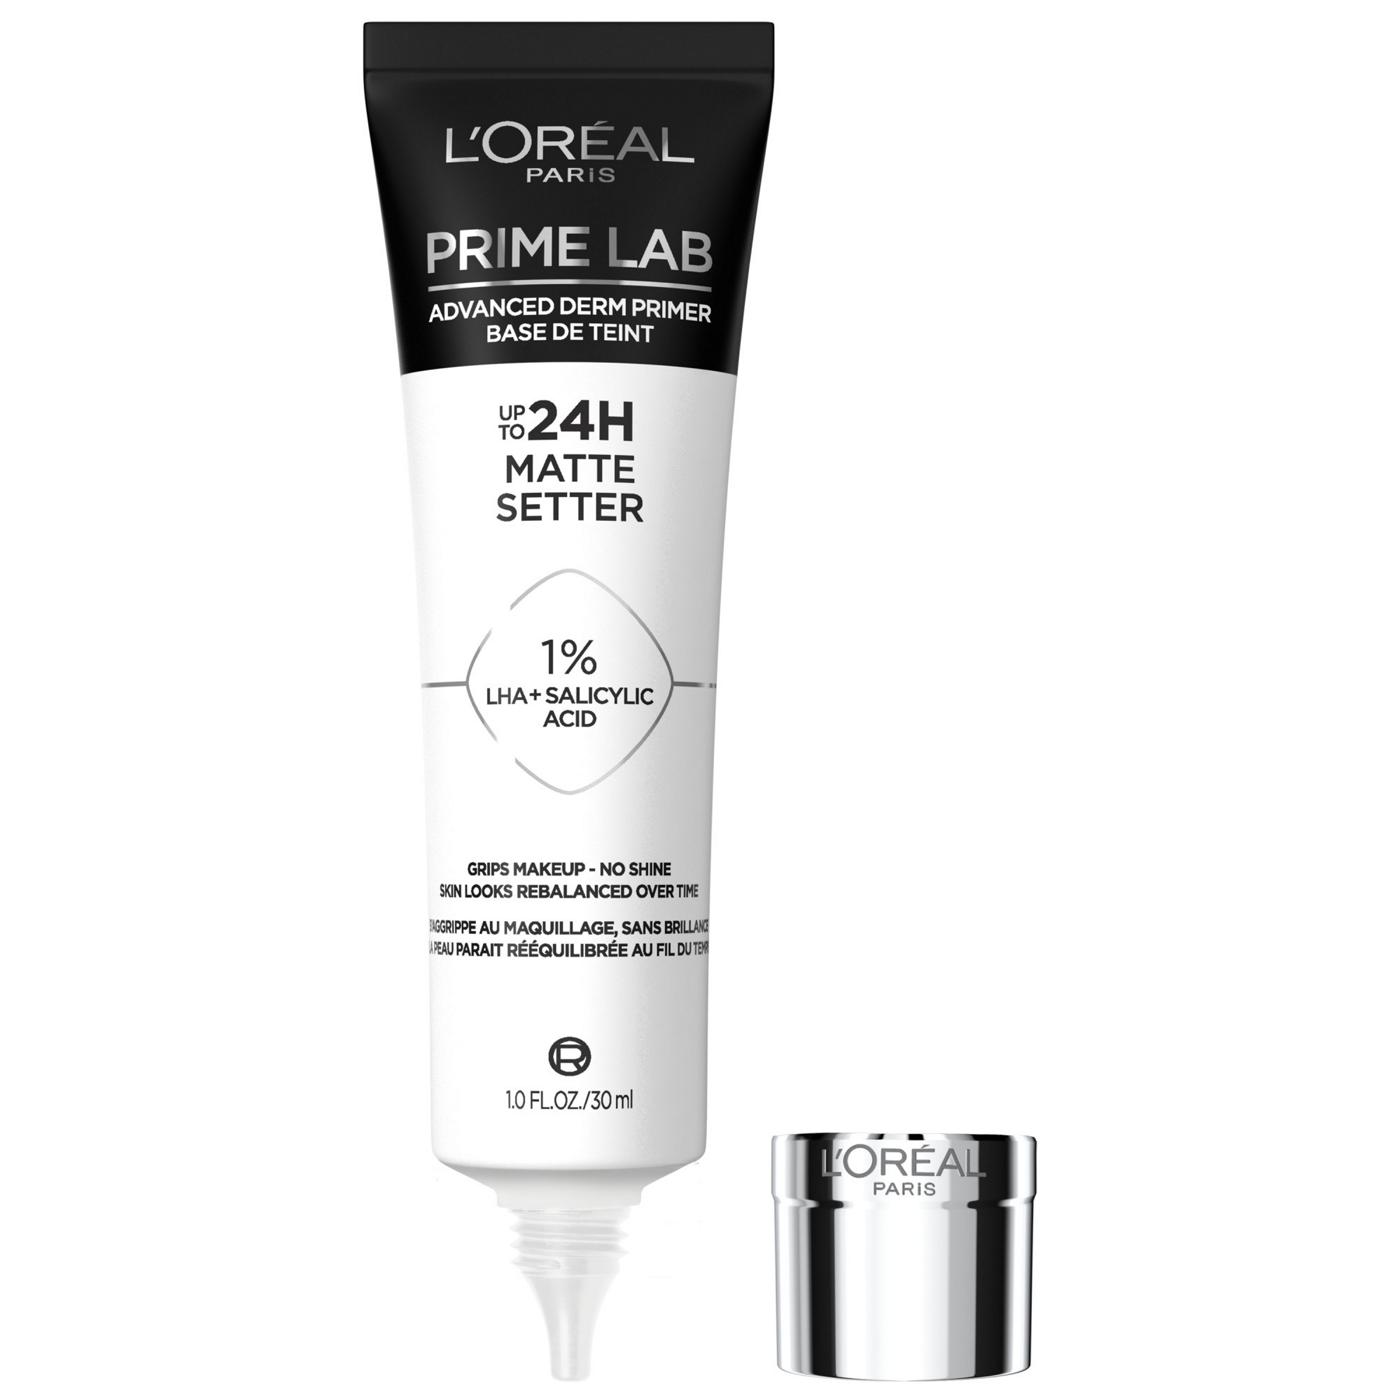 L'Oréal Paris Prime Lab Primer Matte Setter; image 1 of 3